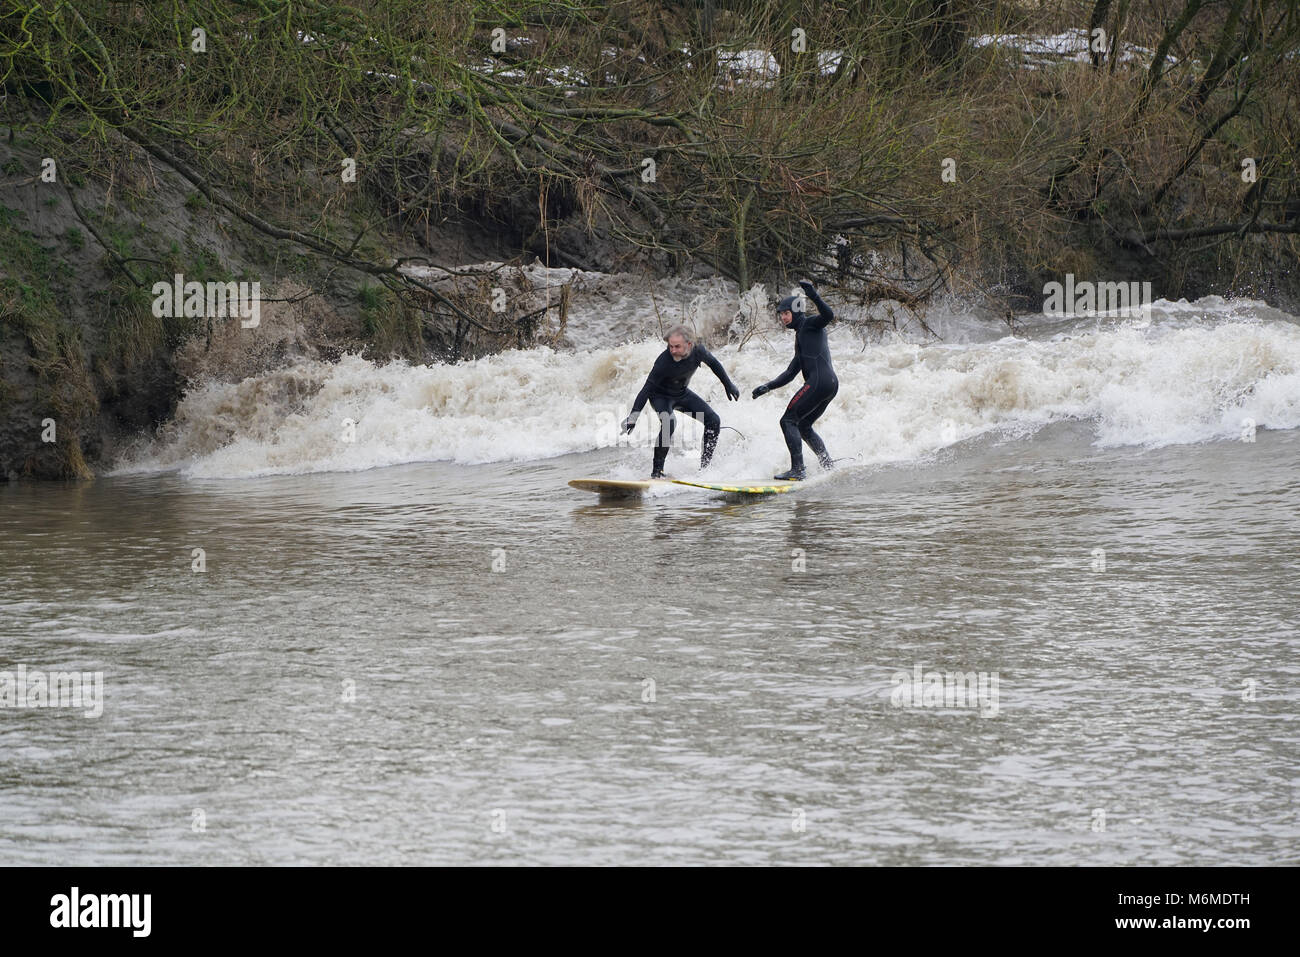 Surfers affrontare un quattro stelle Severn Bore - probabilmente uno dei migliori dell'anno - a circa 9.30 il 4 marzo 2018 a Minsterworth. Foto Stock